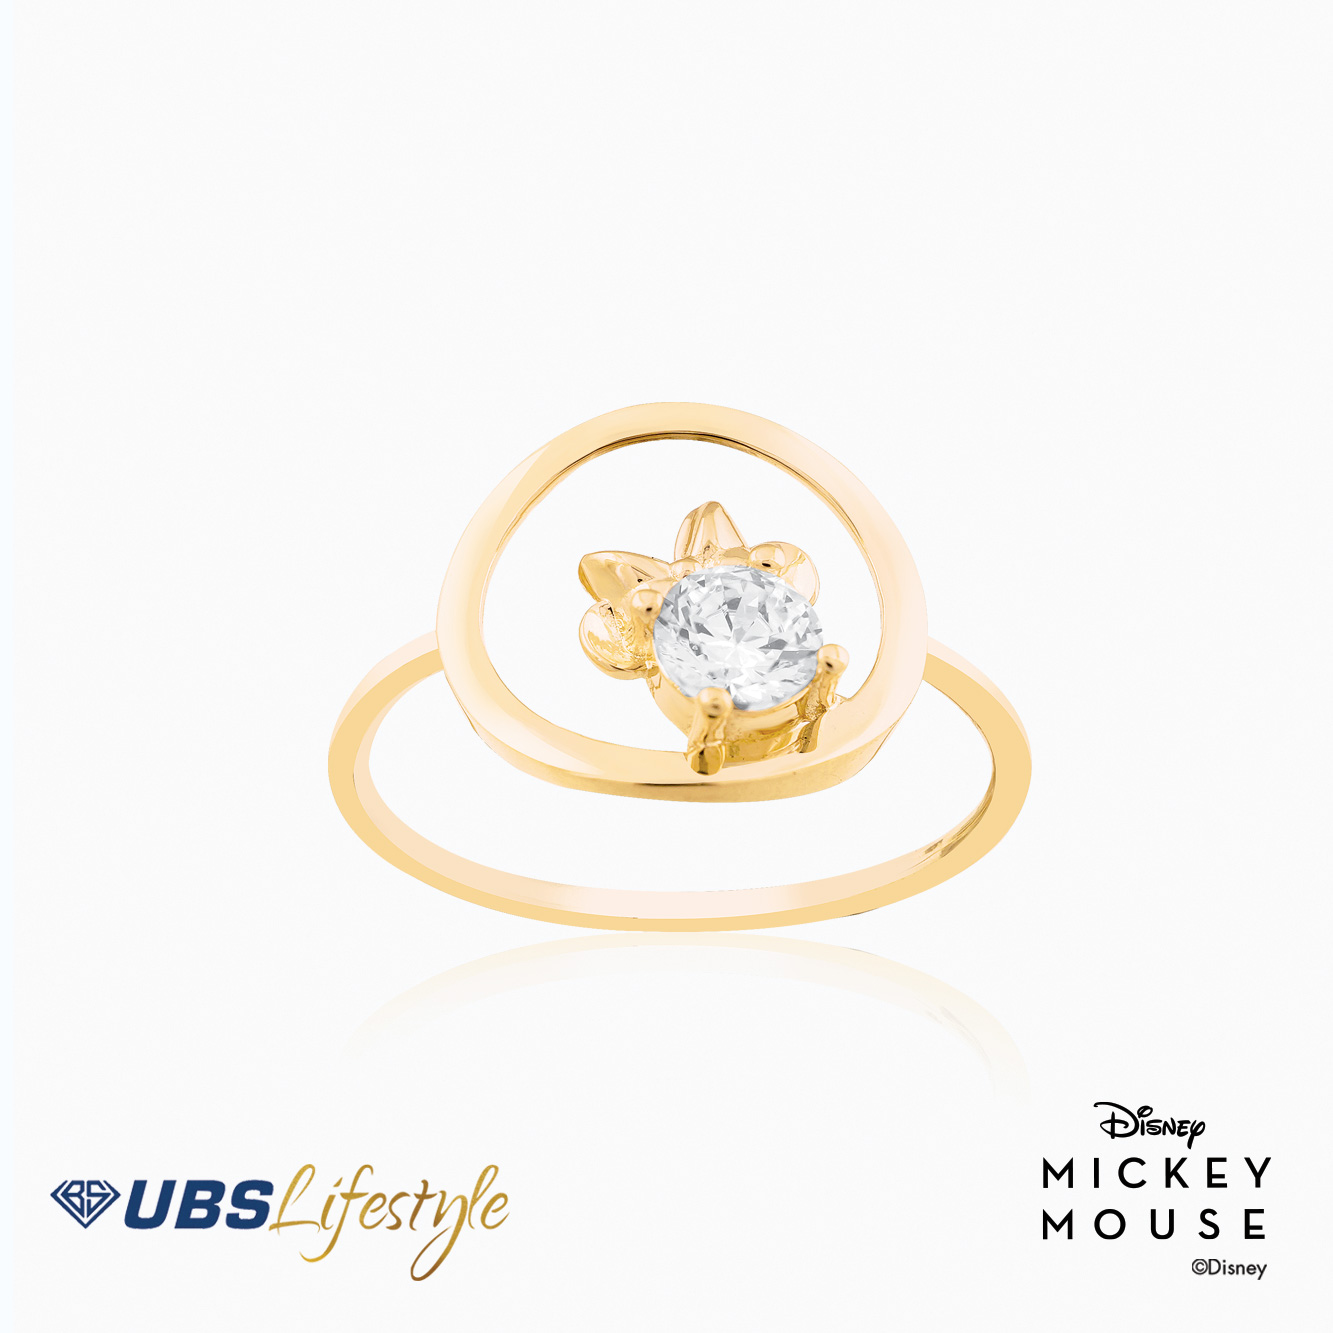 UBS Cincin Emas Disney Minnie Mouse - Ccy0144Y - 17K